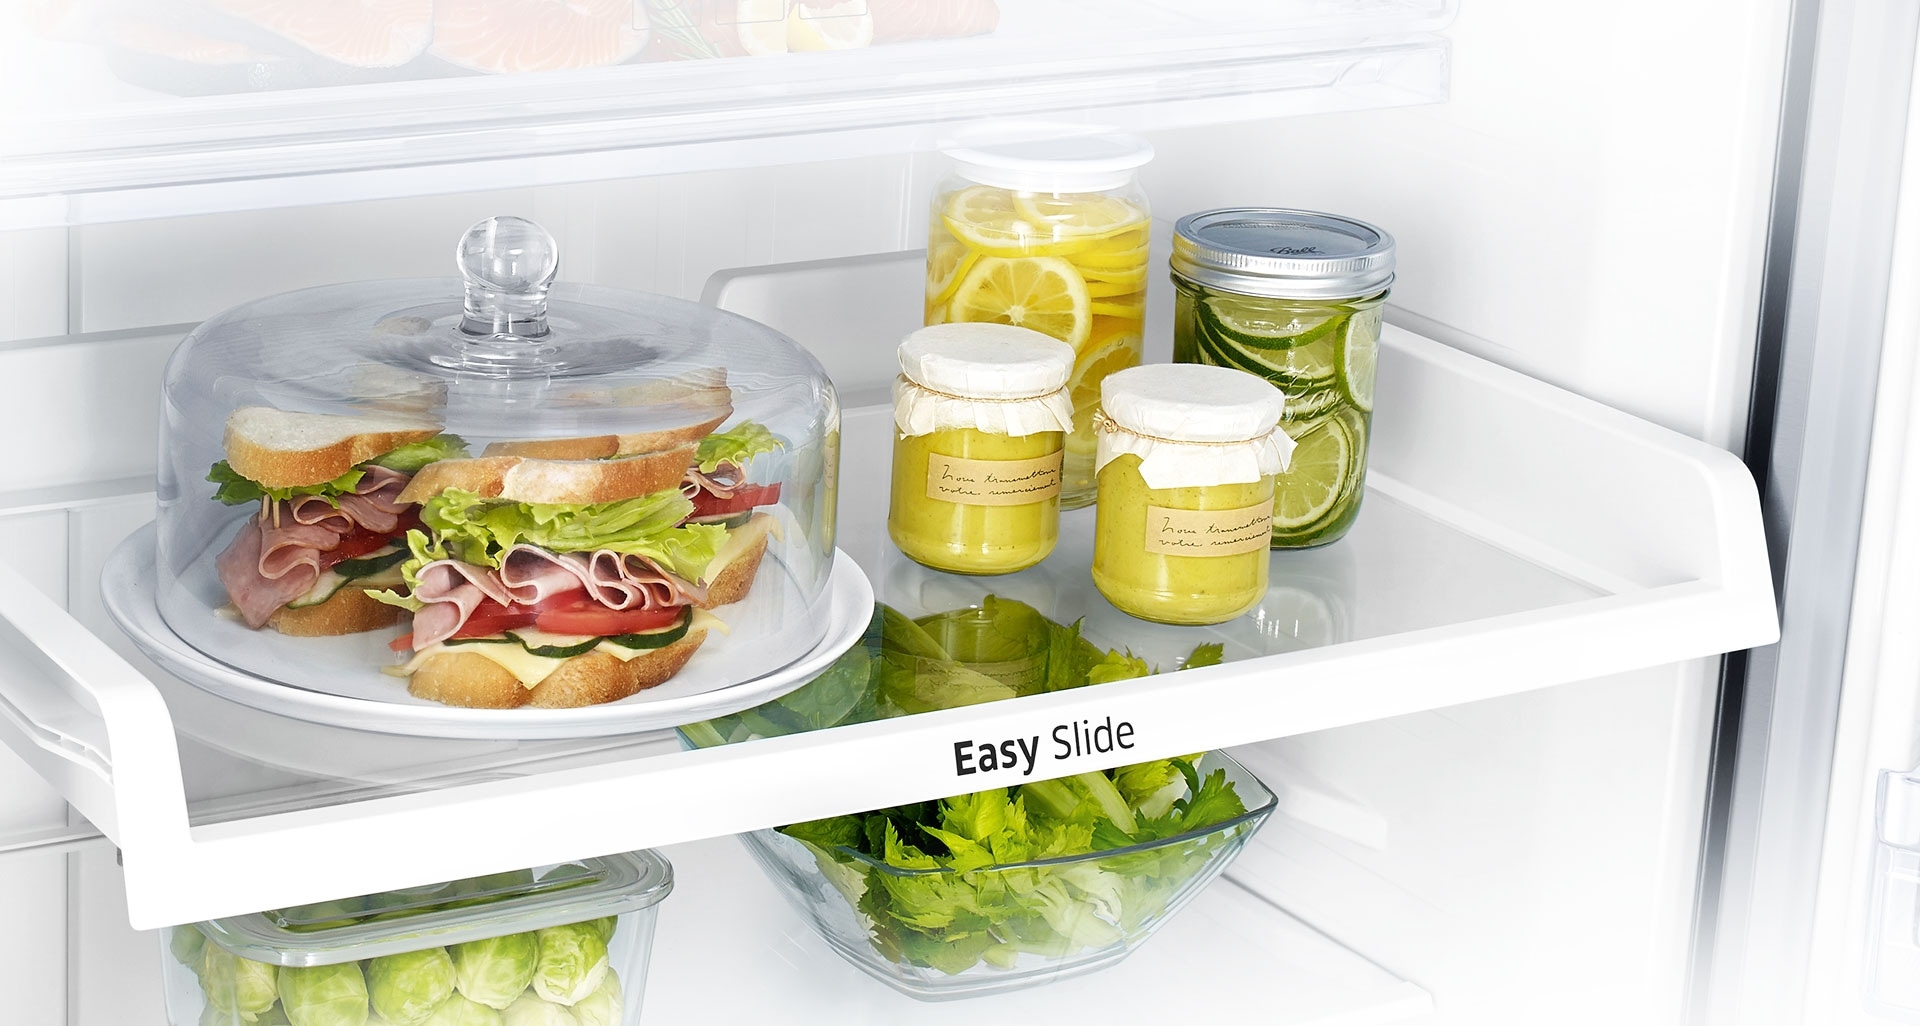 L’accès aux aliments dans un réfrigérateur relève souvent du parcours du combattant. La clayette Easy Slide vous permet de ranger et d’organiser efficacement vos aliments et d’y accéder facilement, y compris ceux qui sont rangés au fond et dans les coins du réfrigérateur.